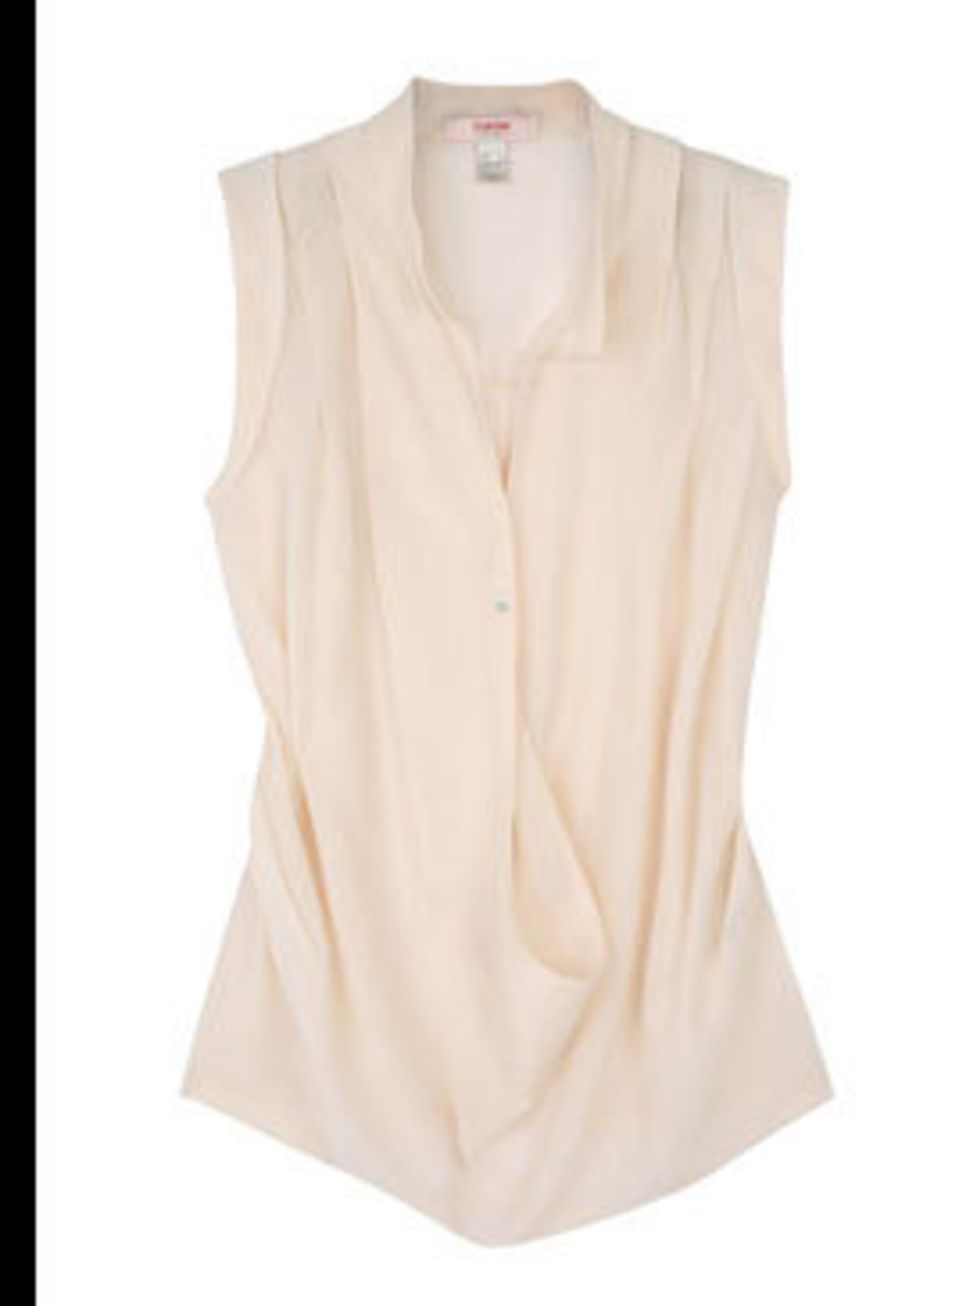 <p>Blouse, £83 by Yarnie by Shin Choi at <a href="http://www.my-wardrobe.com/yarnie-by-shin-choi/cream-ginnie-single-button-blouse-by-yarnie-by-shin-choi">My-Wardrobe</a></p>